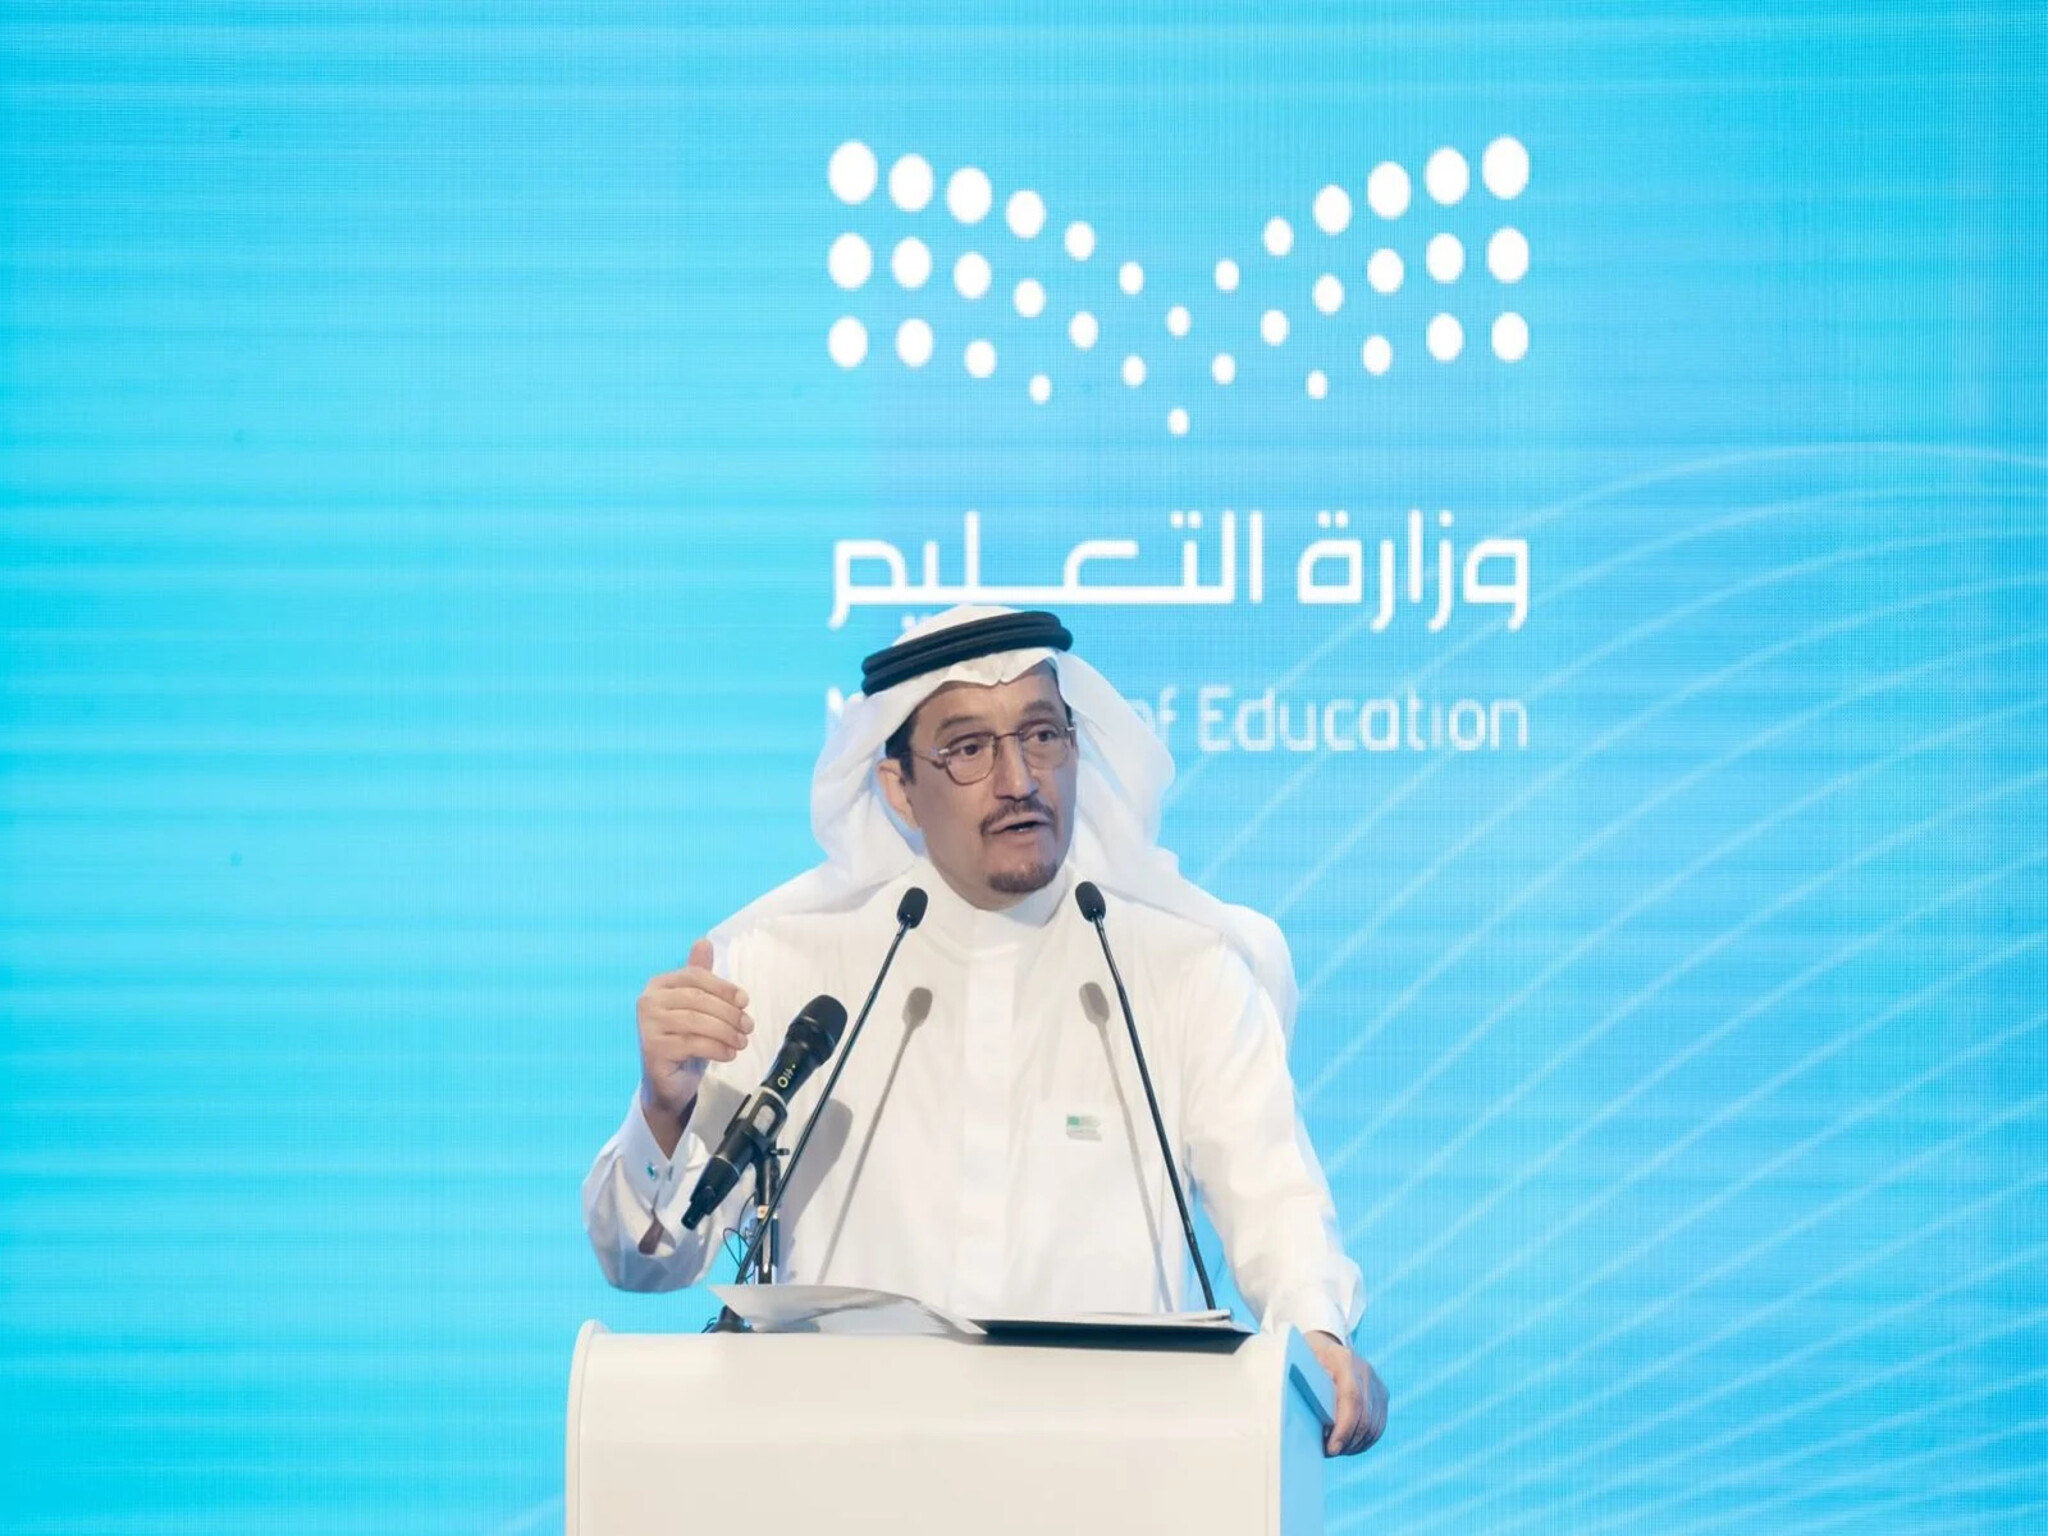 بعد نتائج الرخصة المهنية وزير التعليم السعودي يلغي قرار الربط مع العلاوة السنوية